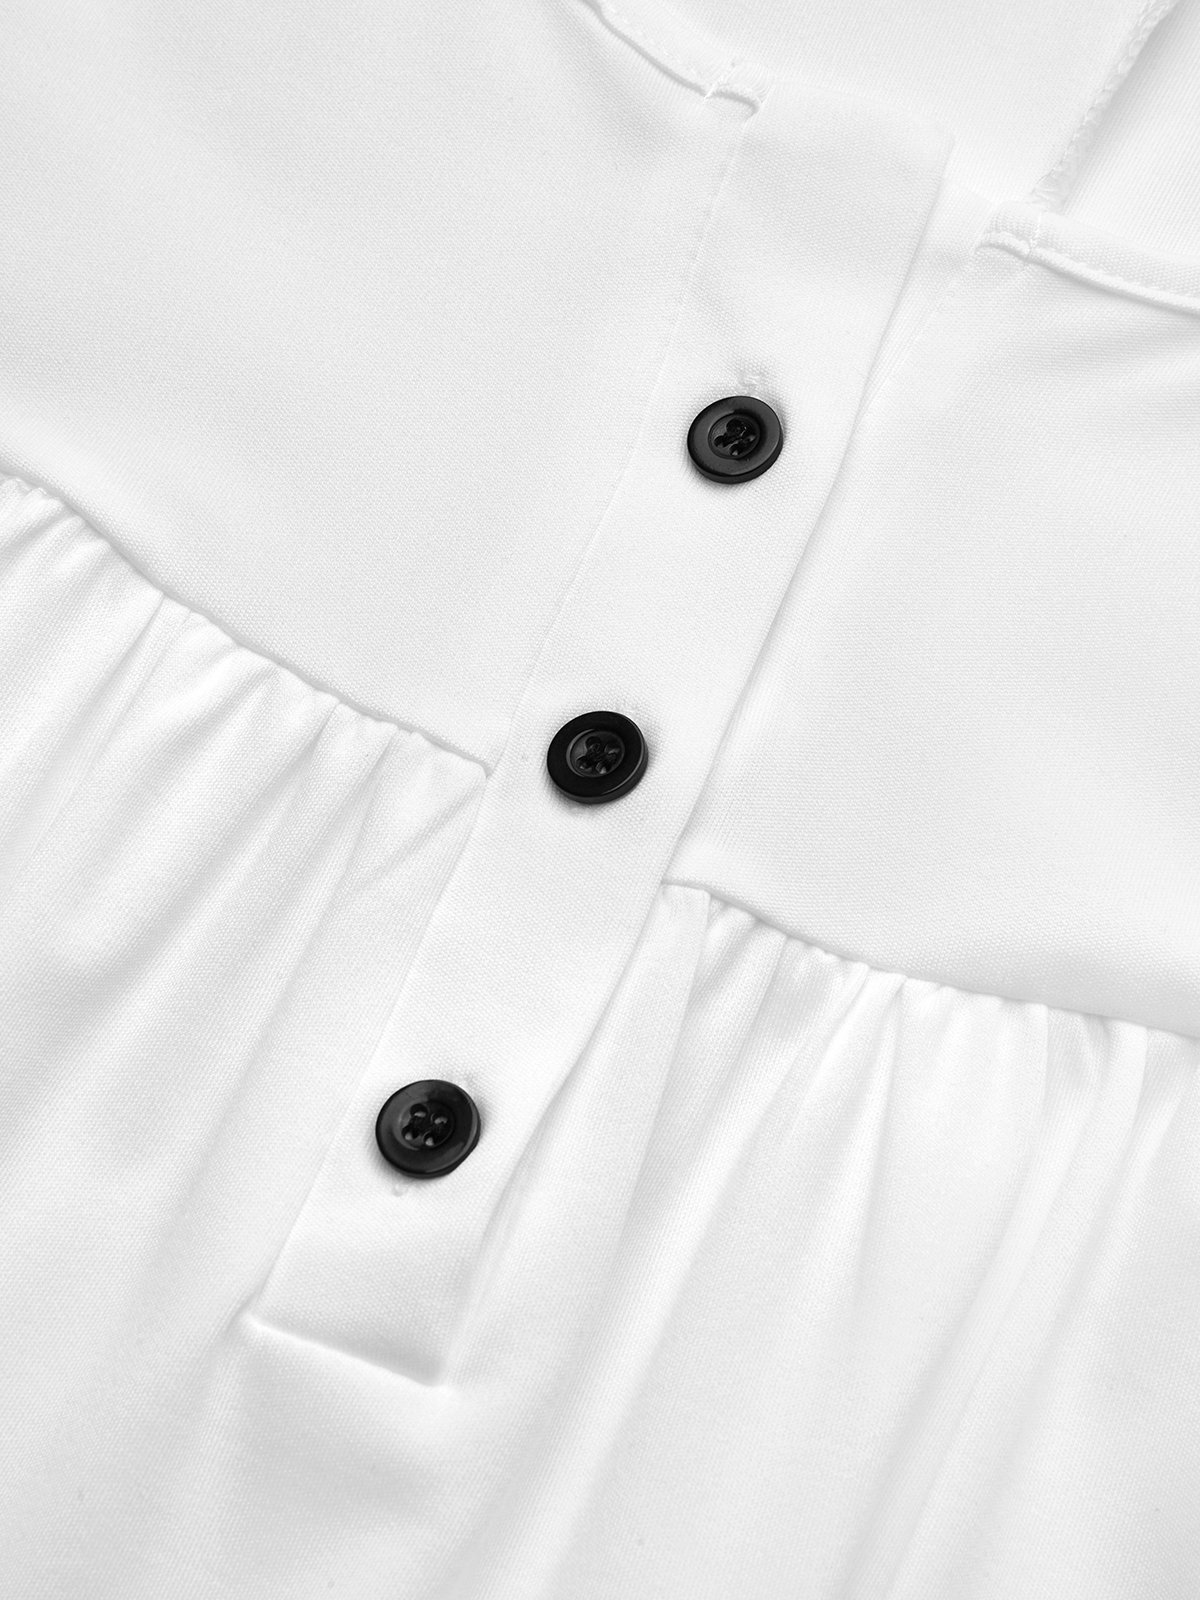 Robes Femmes Plain Été Simple Taille Haute Ample Ligne X Boucle avant Élasticité moyenne Dakota du Sud